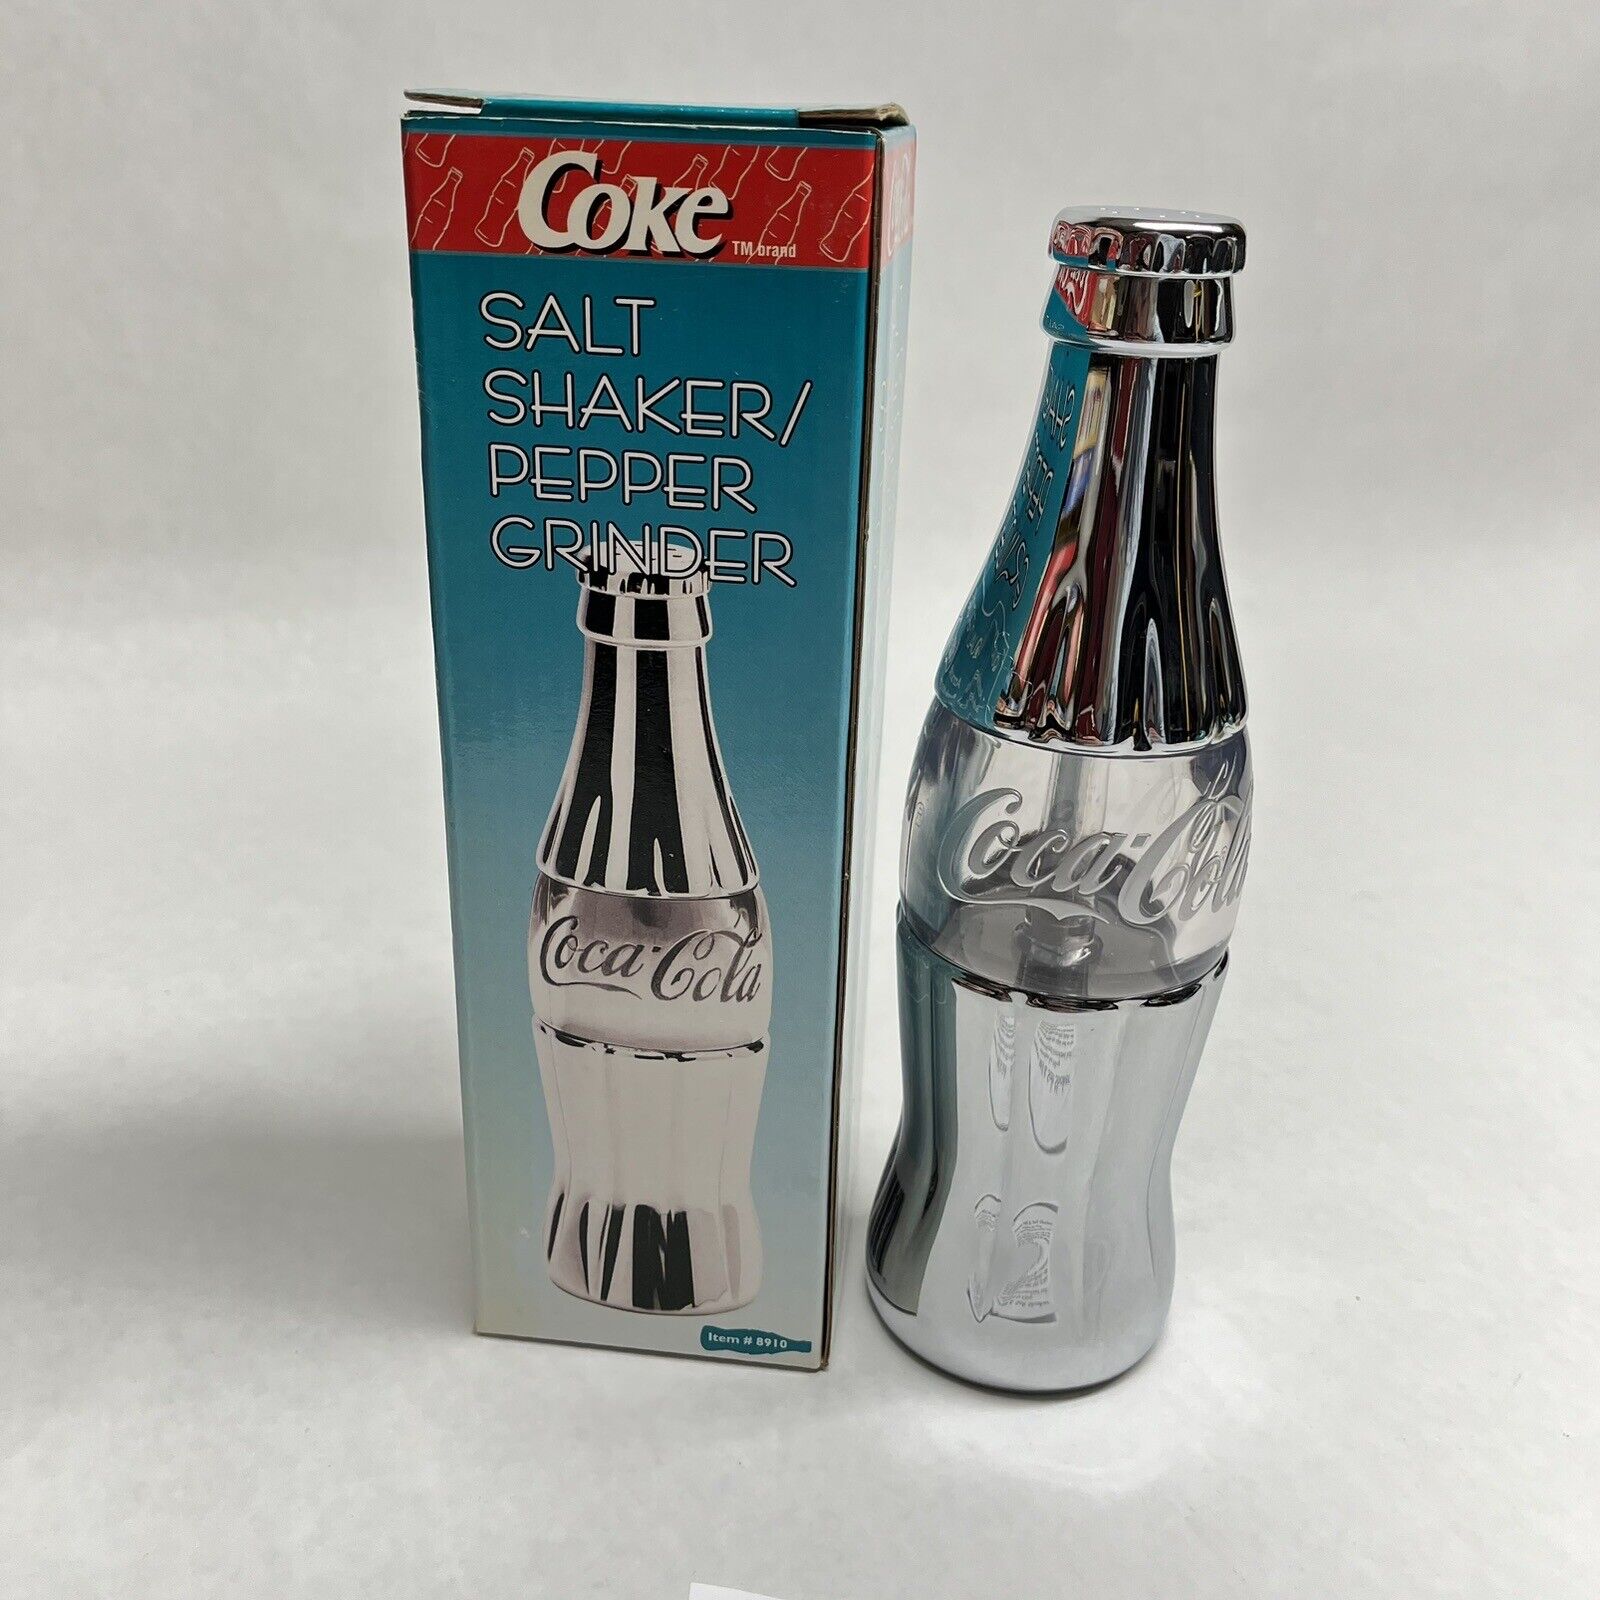 Coca Cola Salt Shaker/Pepper Grinder Chrome Plated  #8910